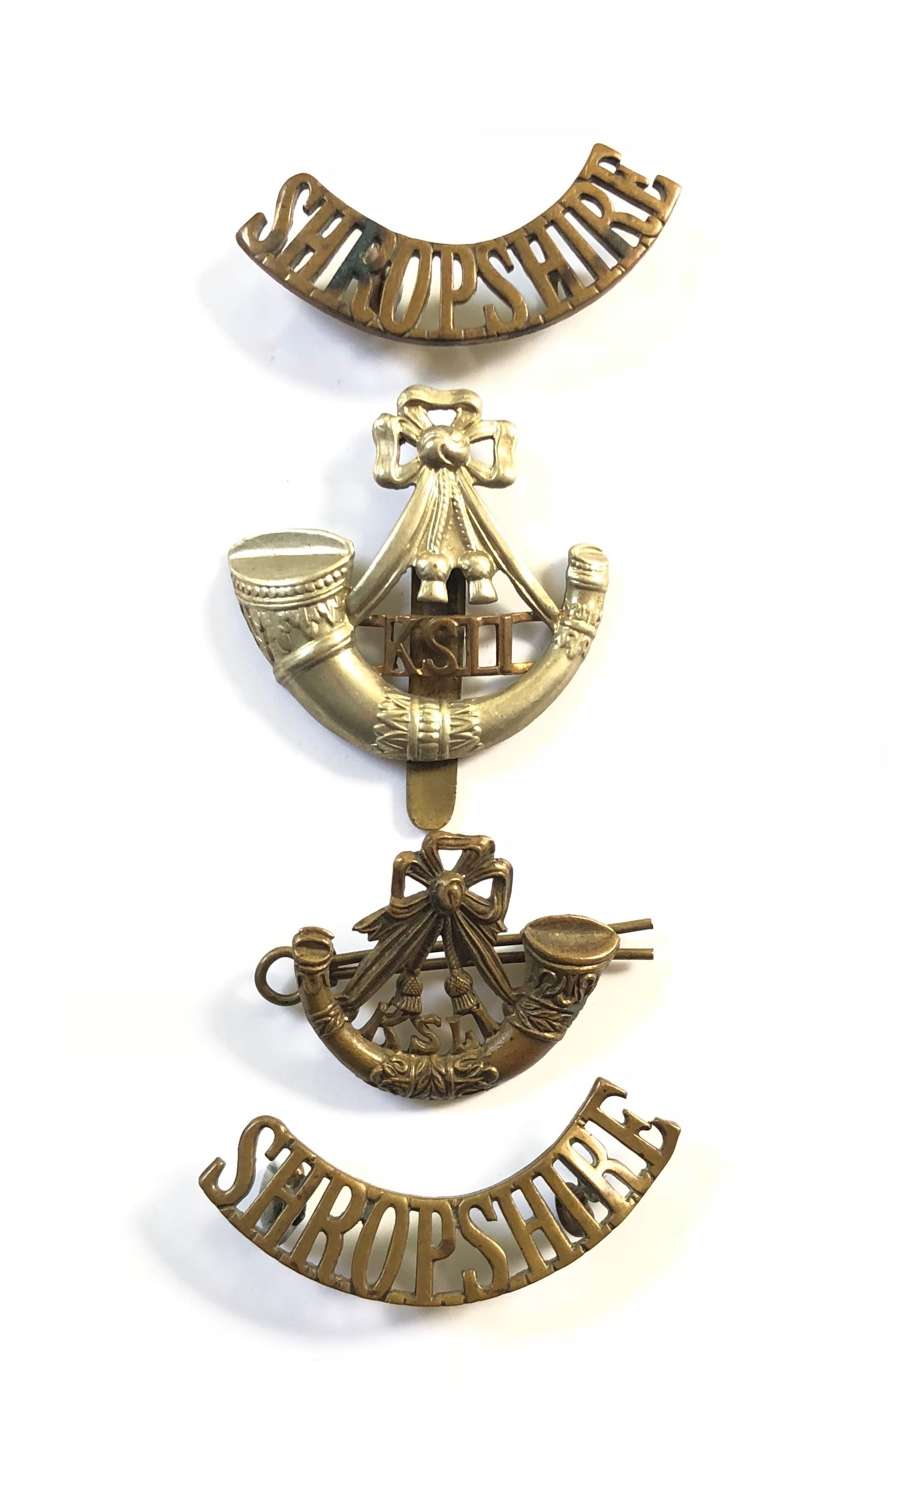 WW1 Period KSLI King’s Shropshire Light Infantry Badges.